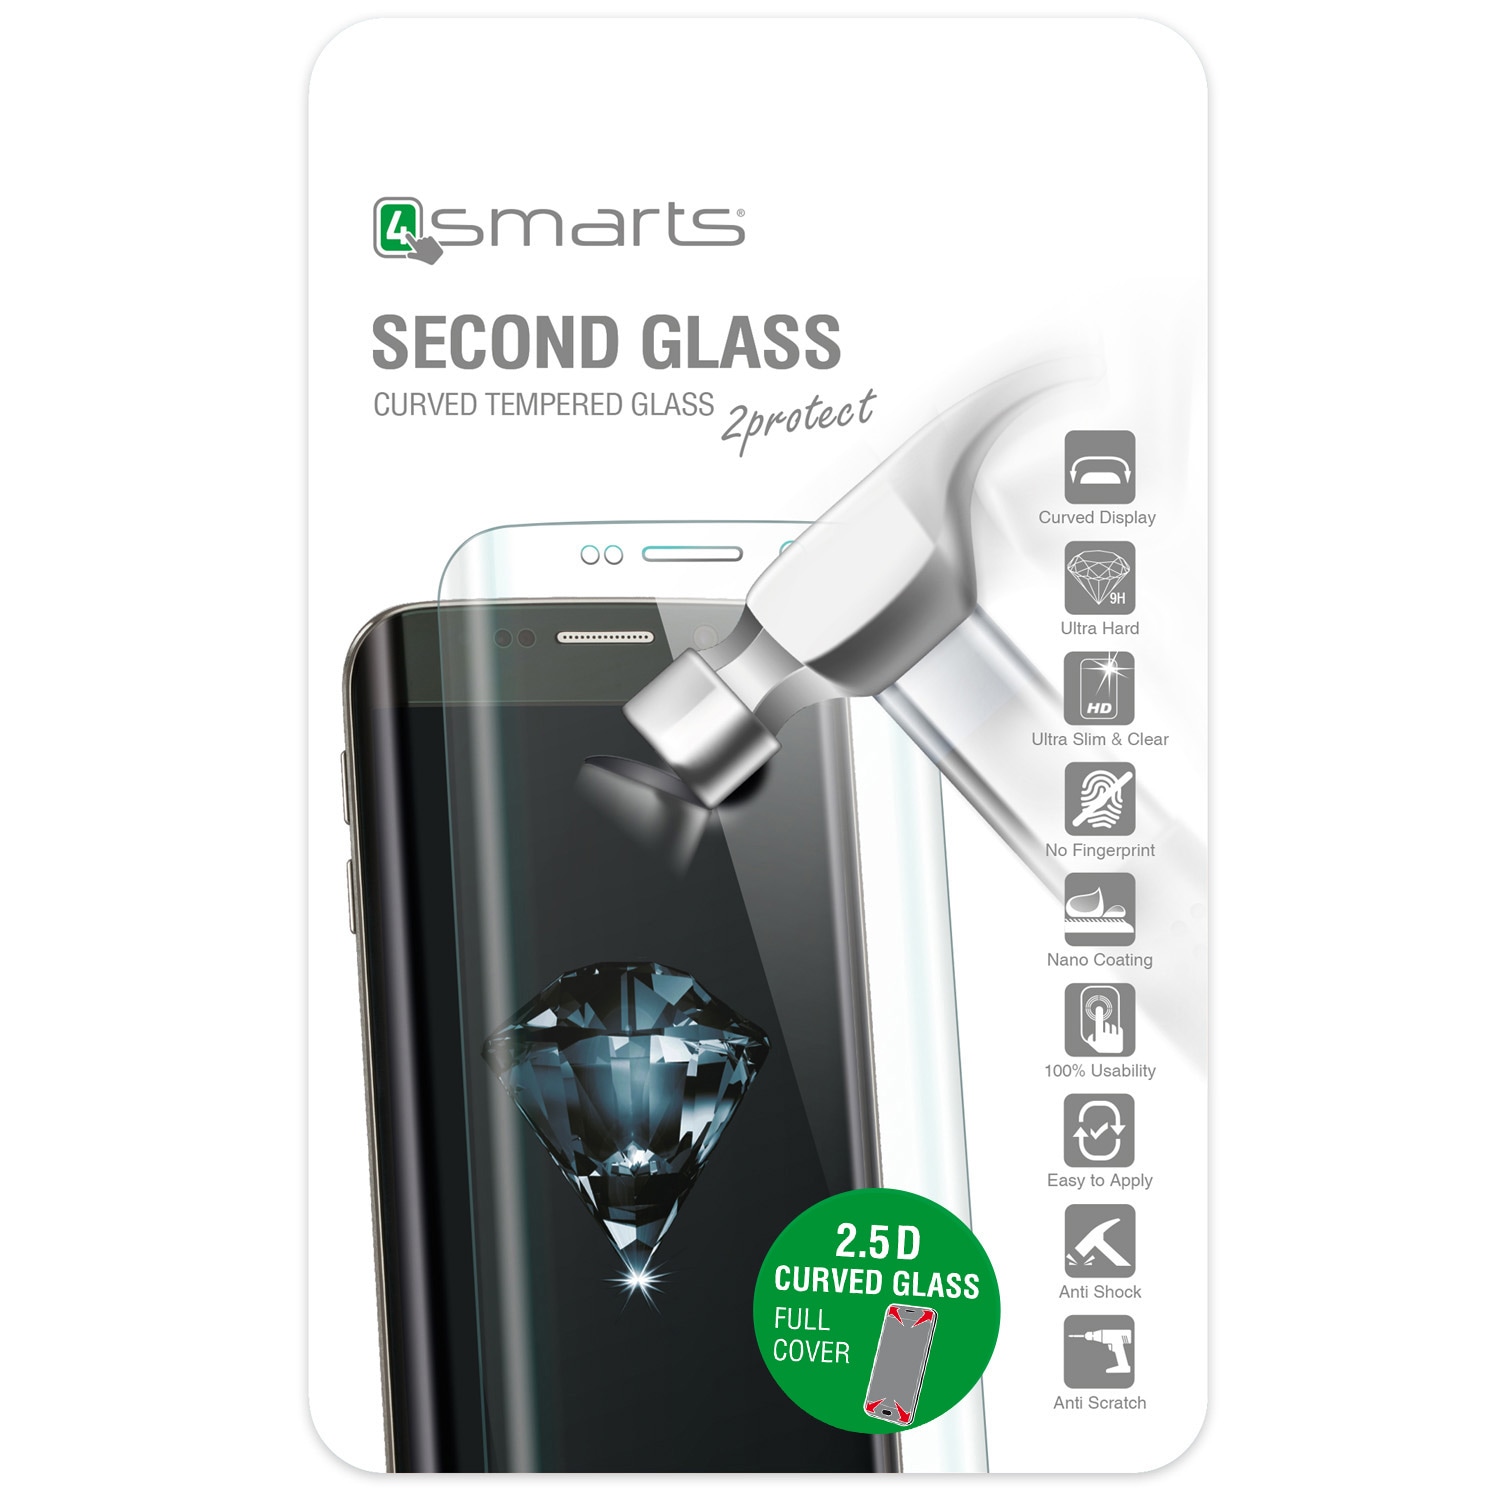 4smarts Second Glass Curved 2.5D til iPhone 8 / 7 -  Sølv